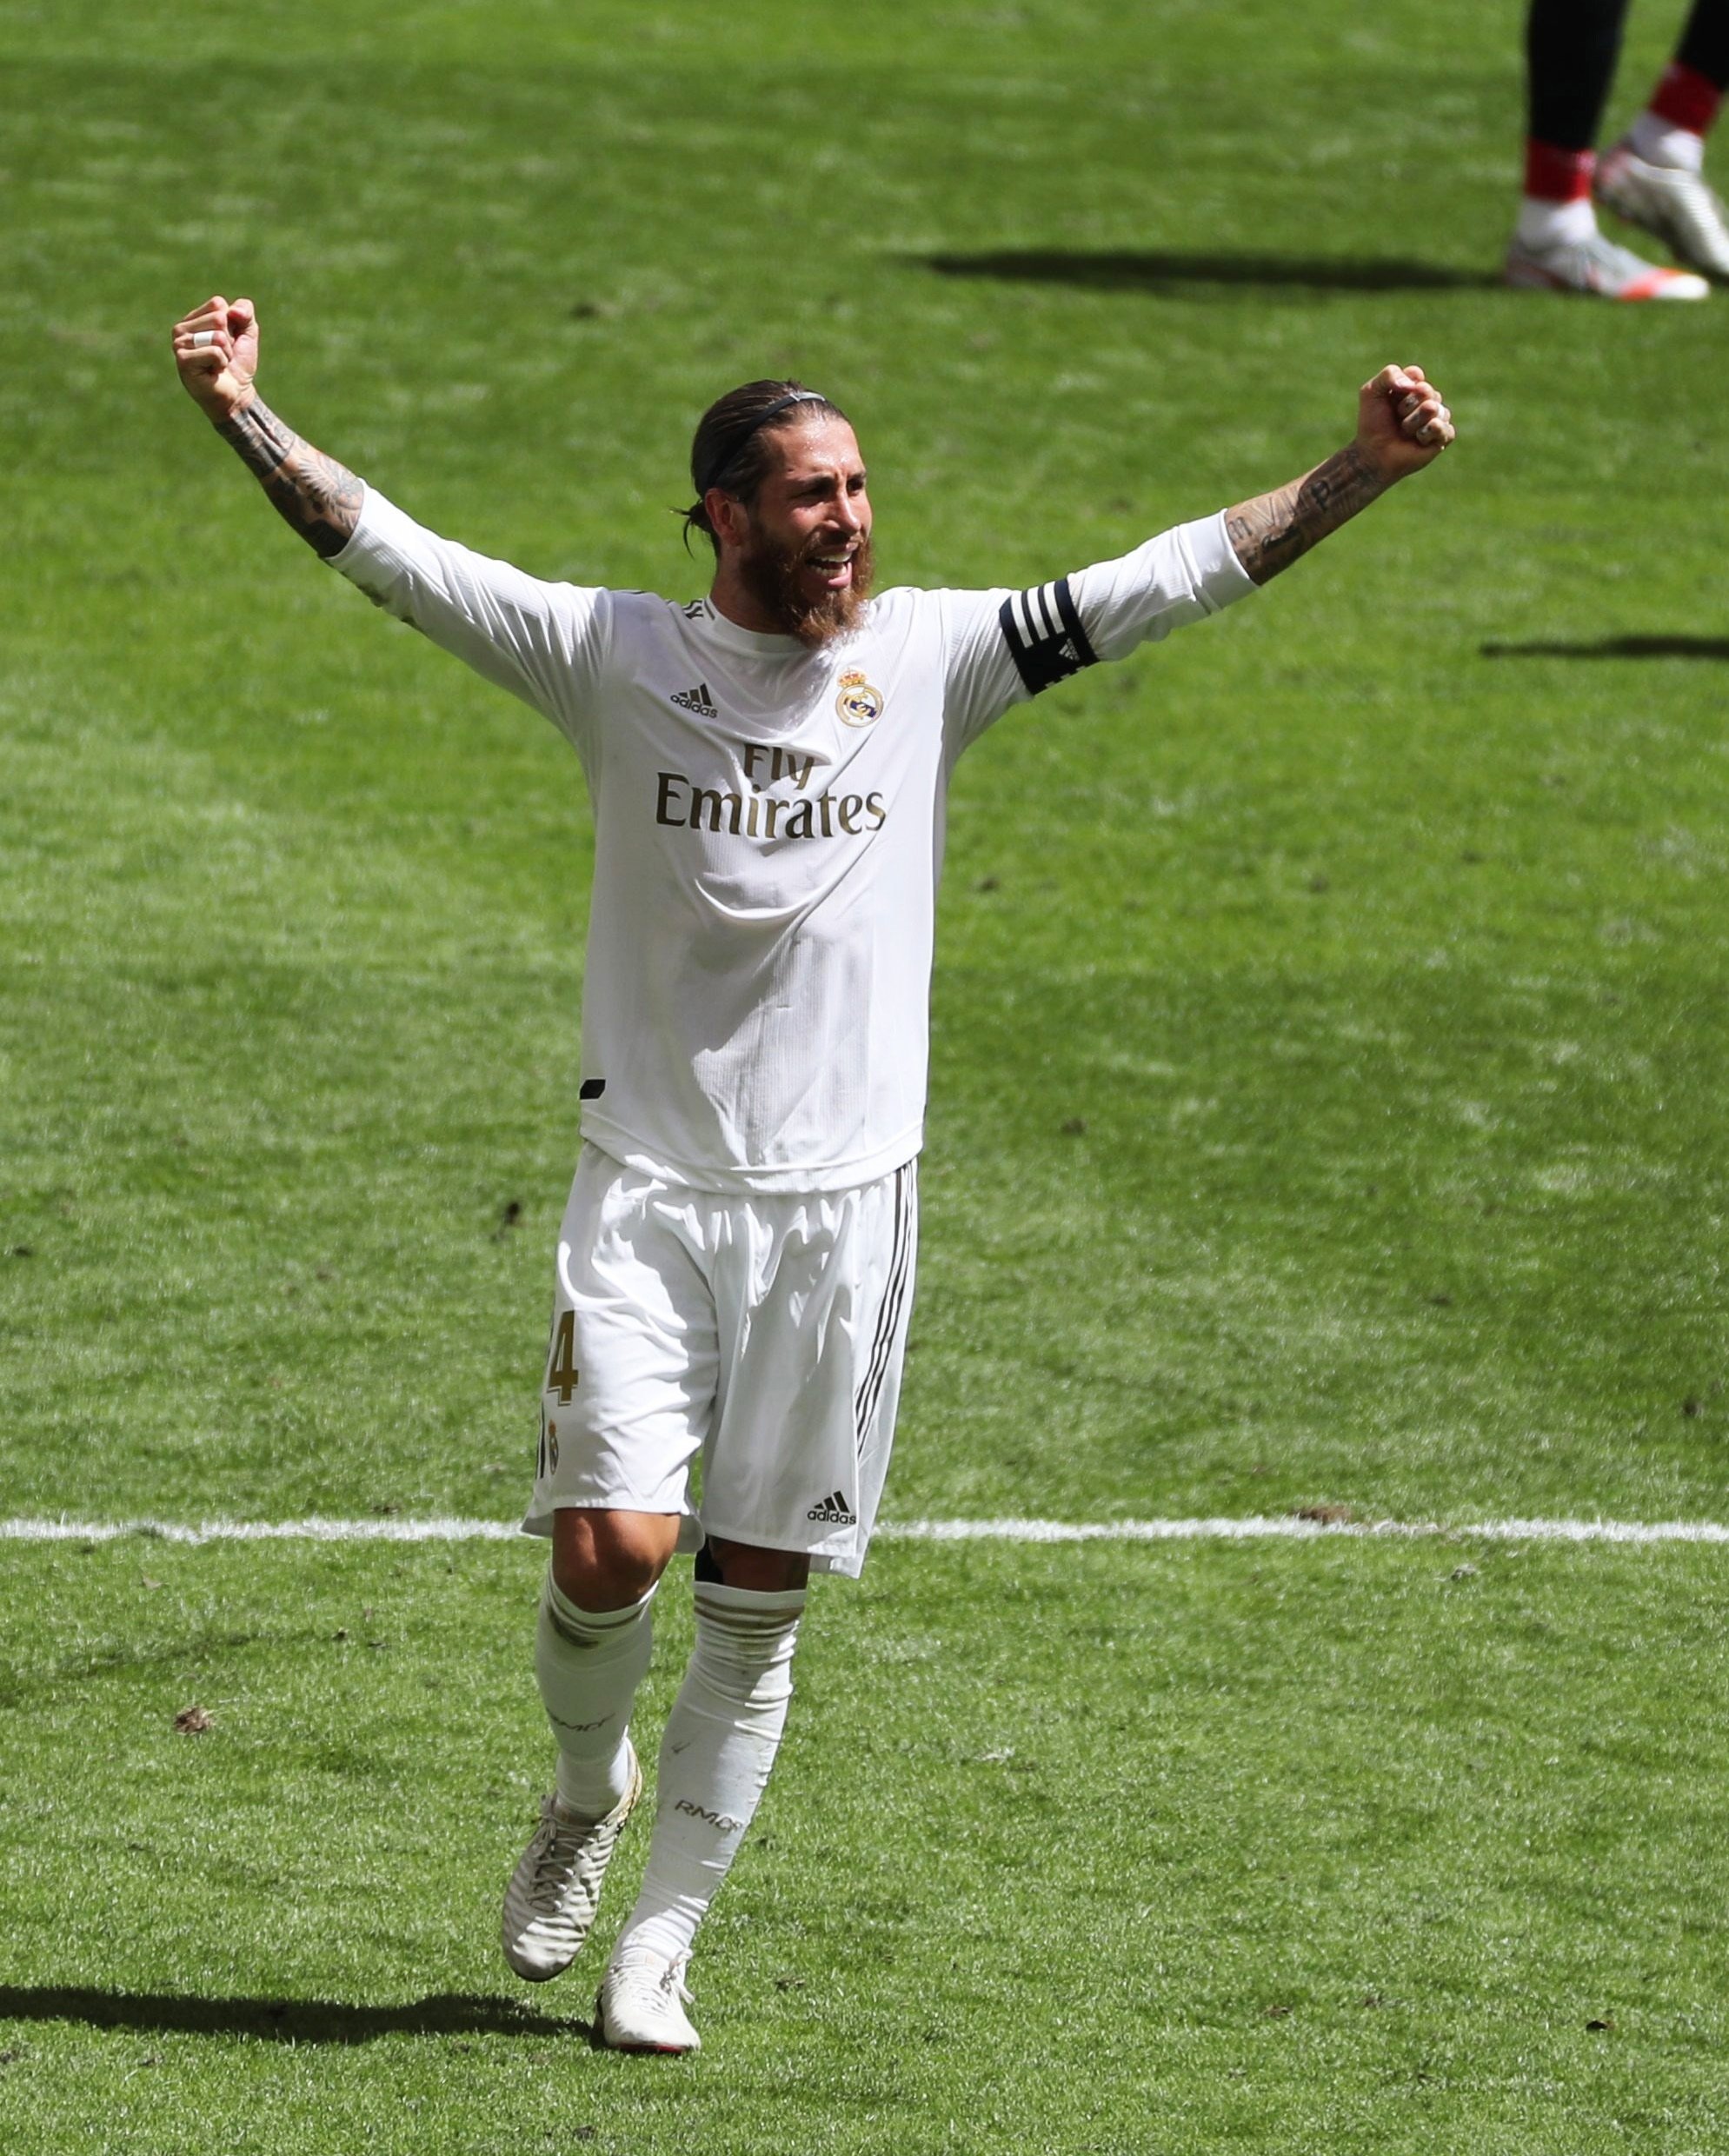 El Real Madrid gana gracias a un nuevo robo en el Villamarín